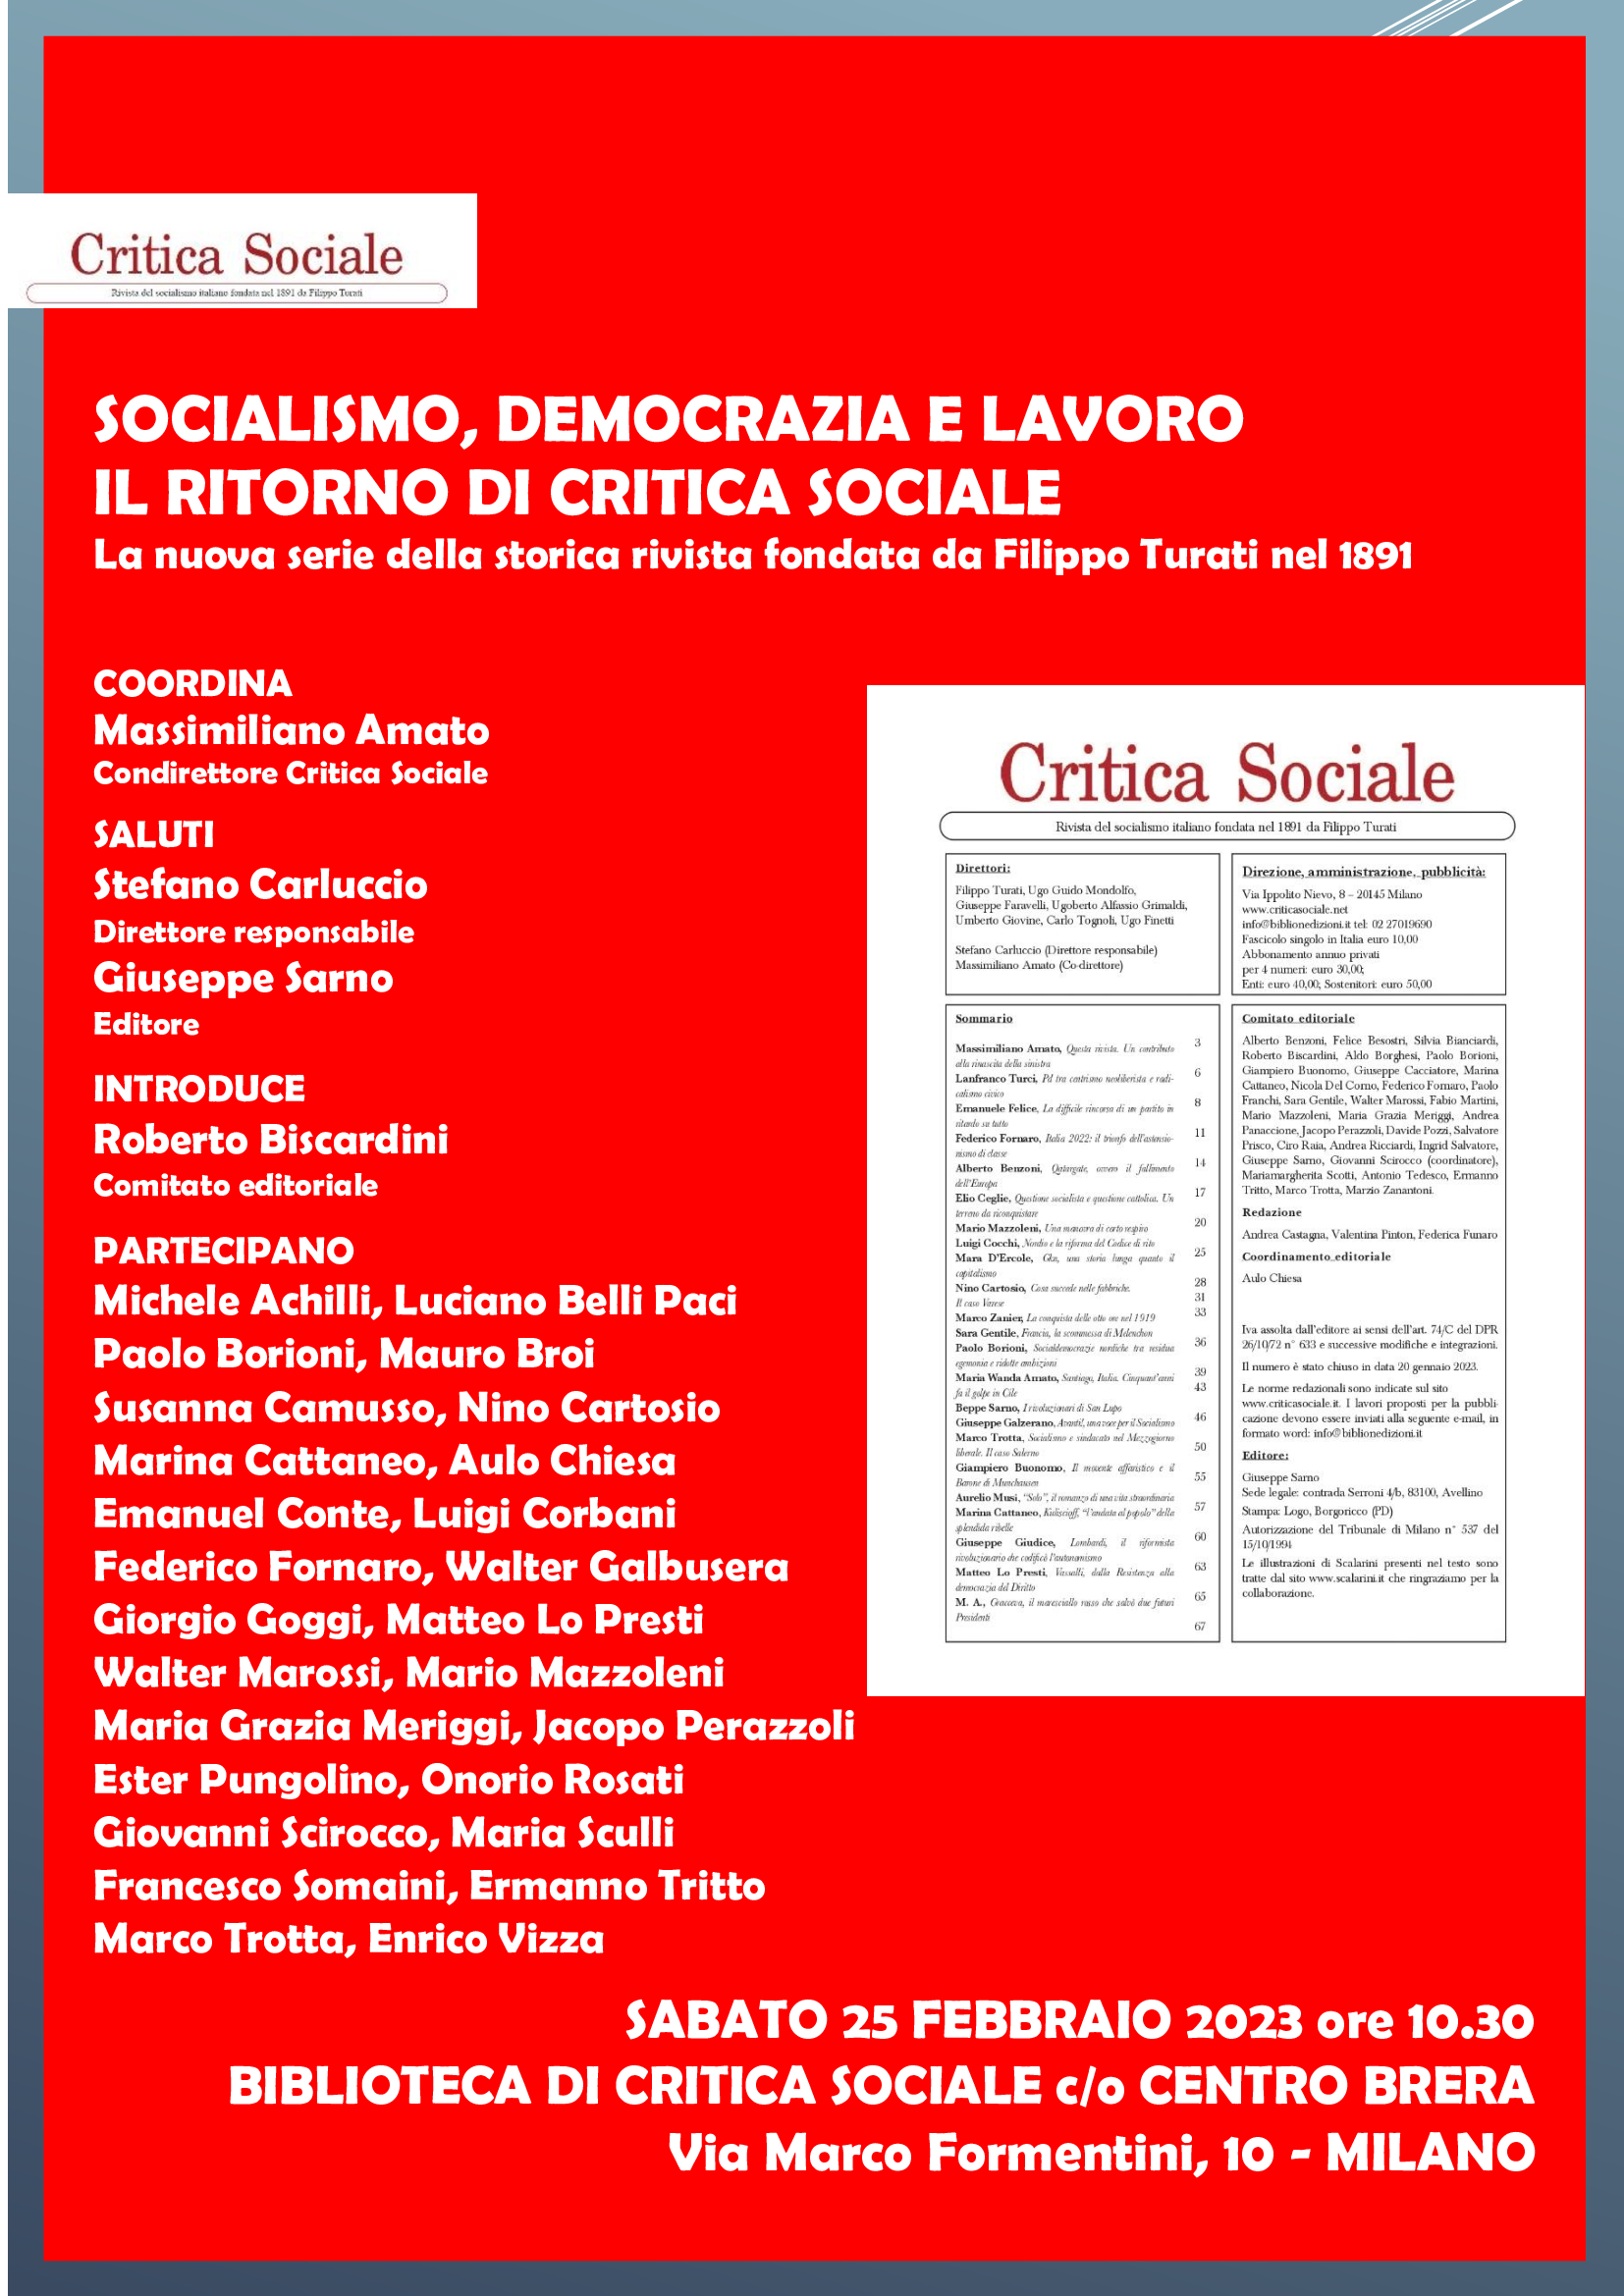 Il 25 febbraio al Centro Brera a Milano la presentazione della nuova Critica Sociale